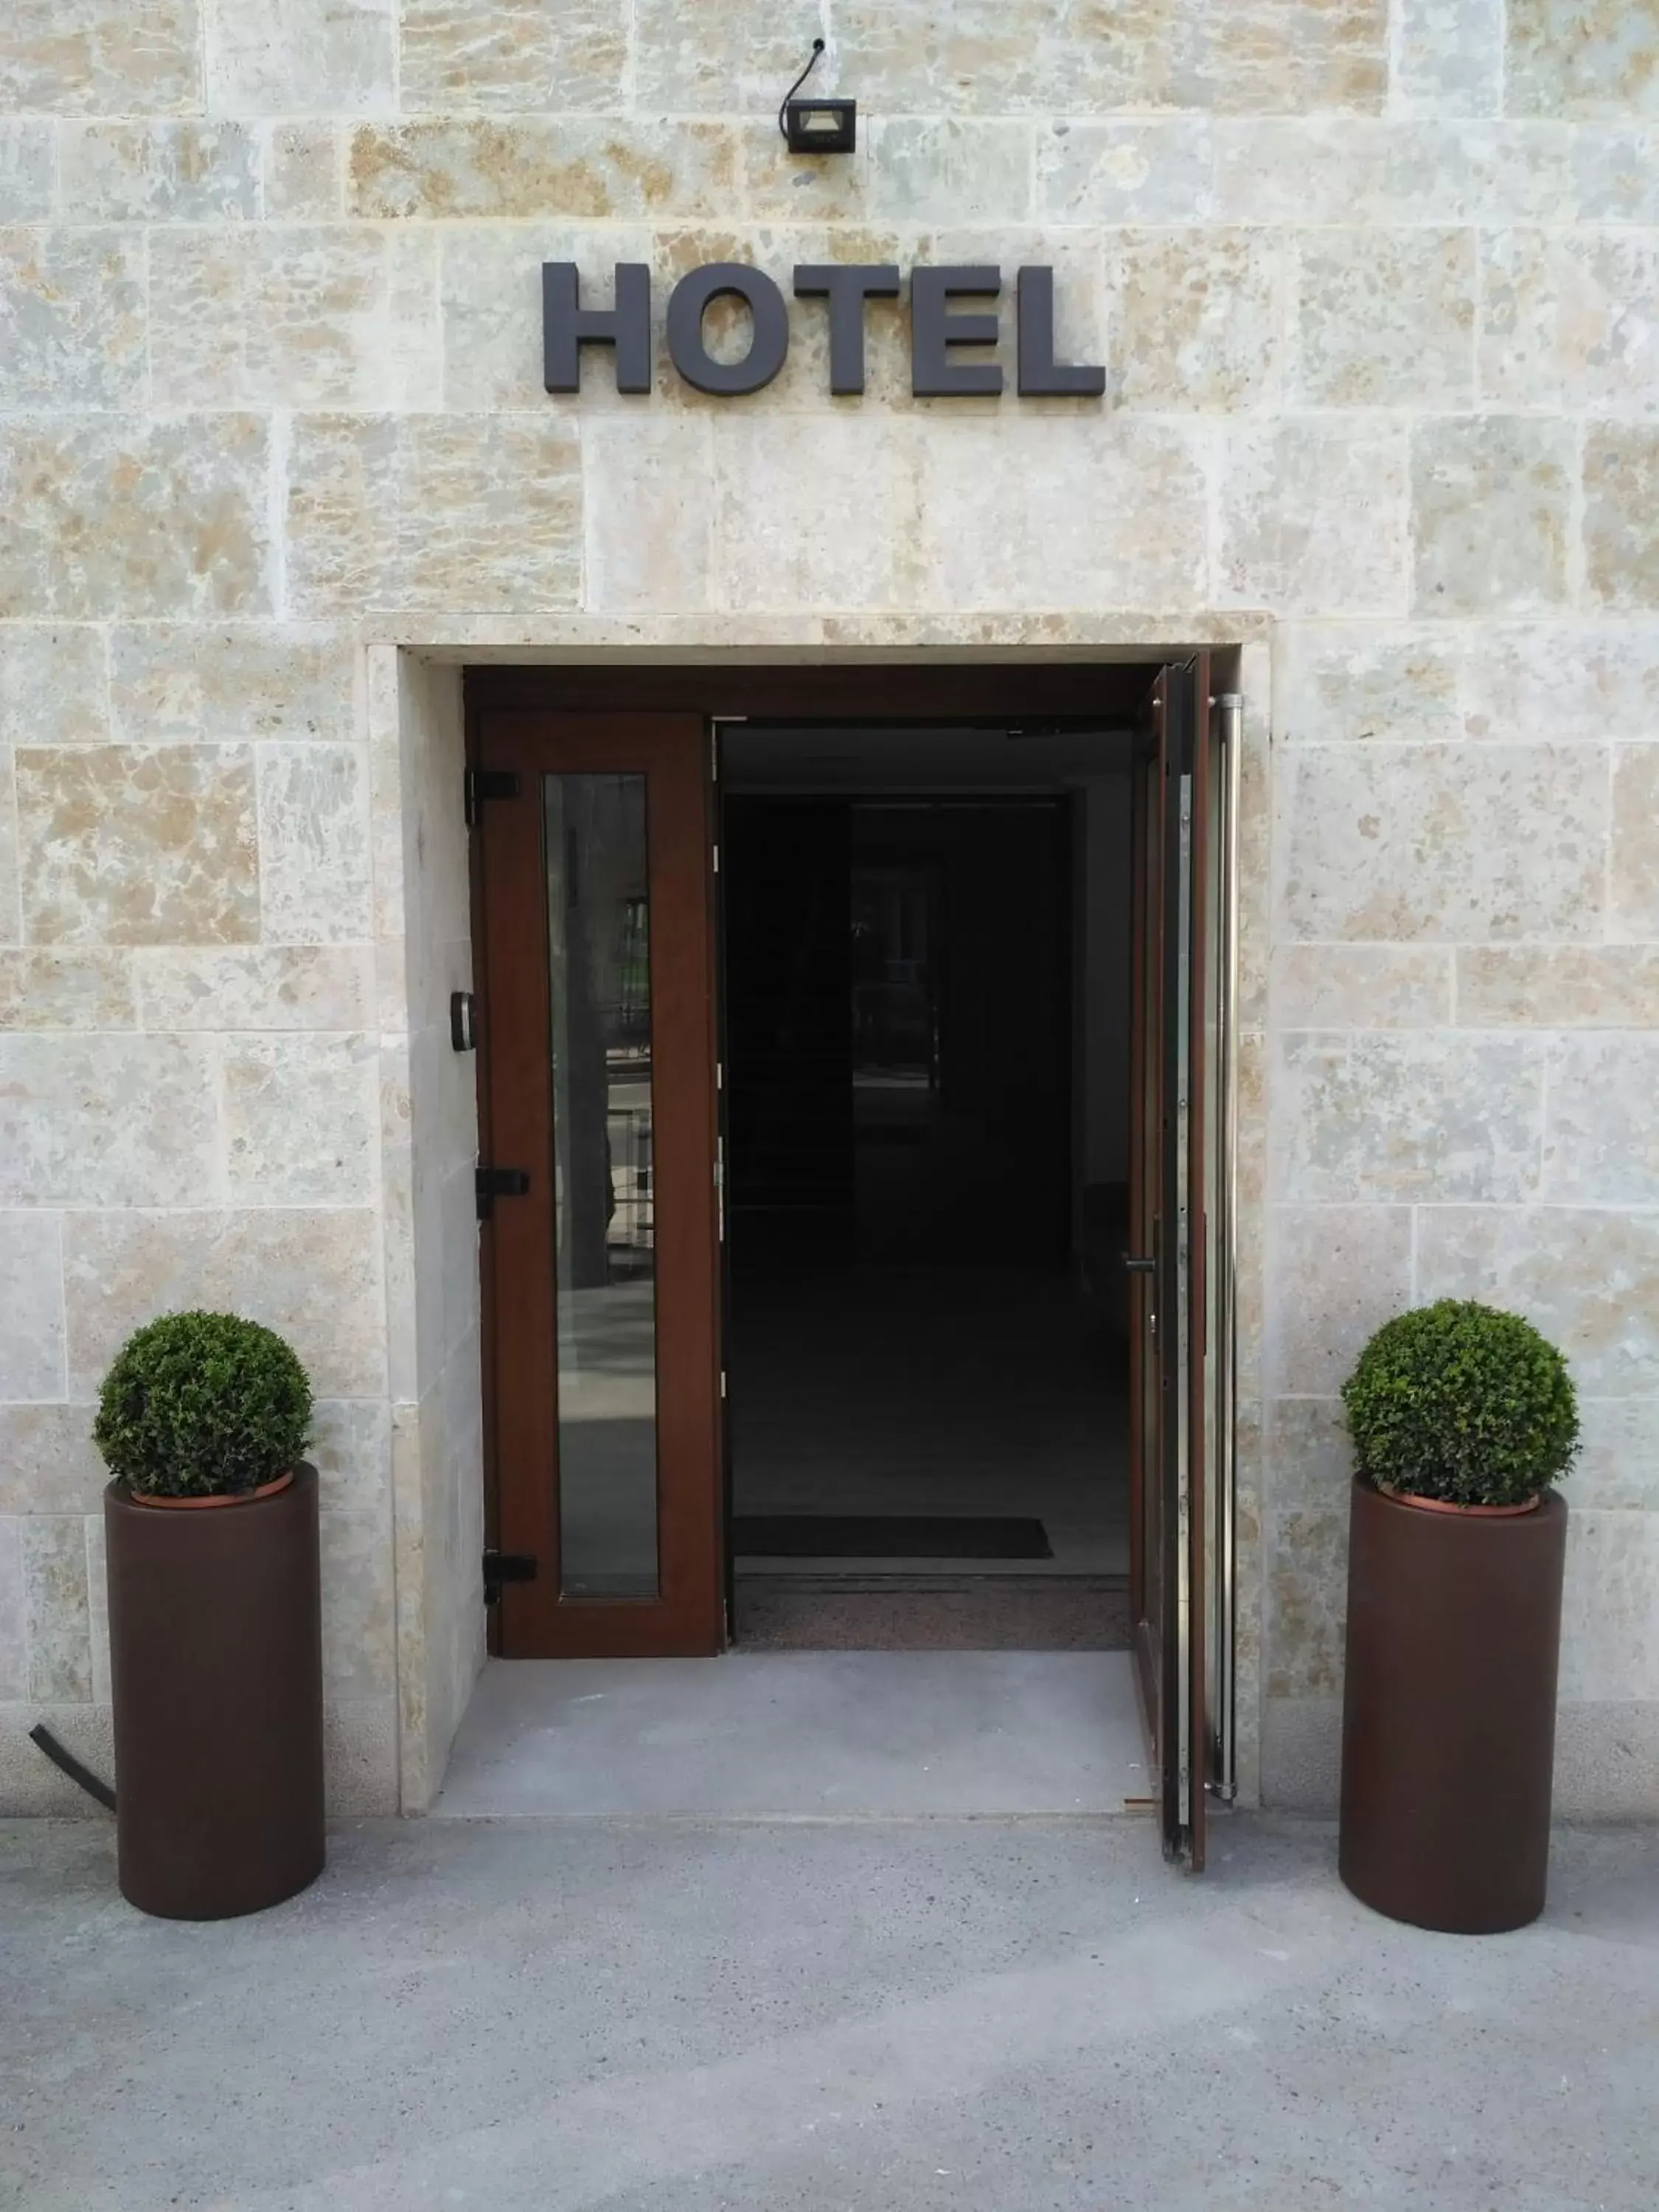 Facade/entrance in Hotel Puerta Ciudad Rodrigo